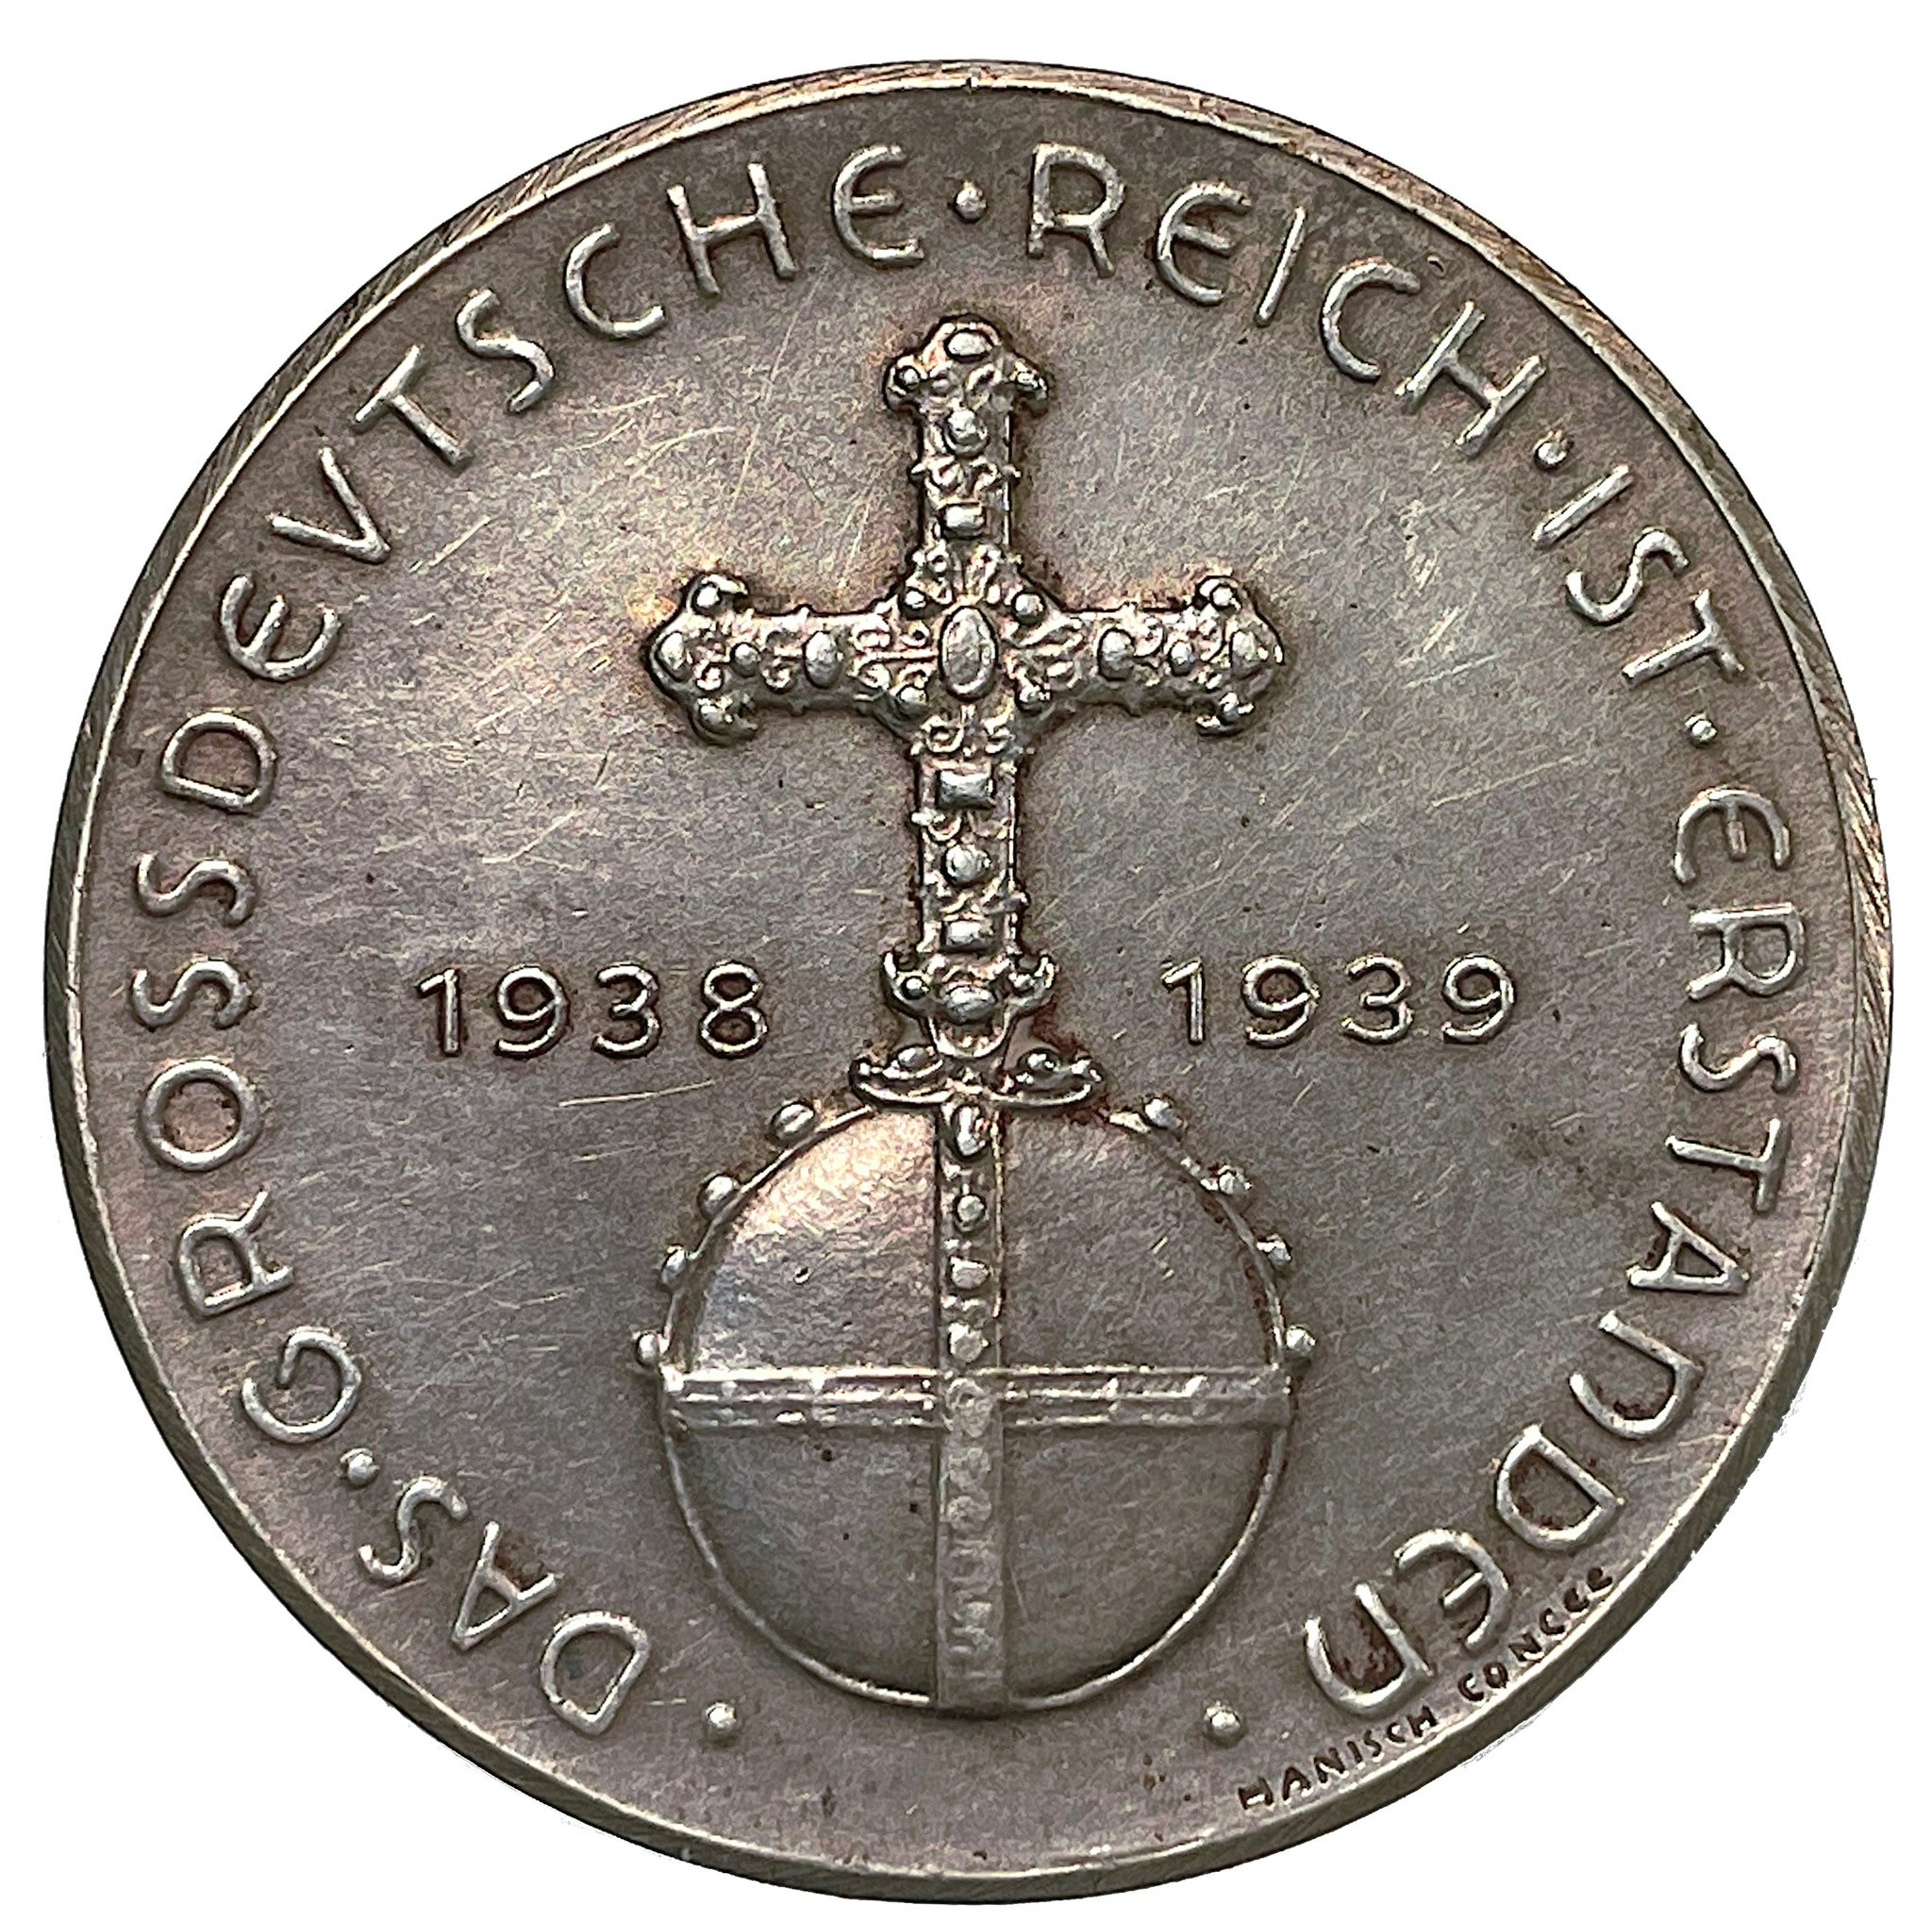 Tredje Riket - Adolf Hitler 1938 - 1939 av Hanisch & Concée